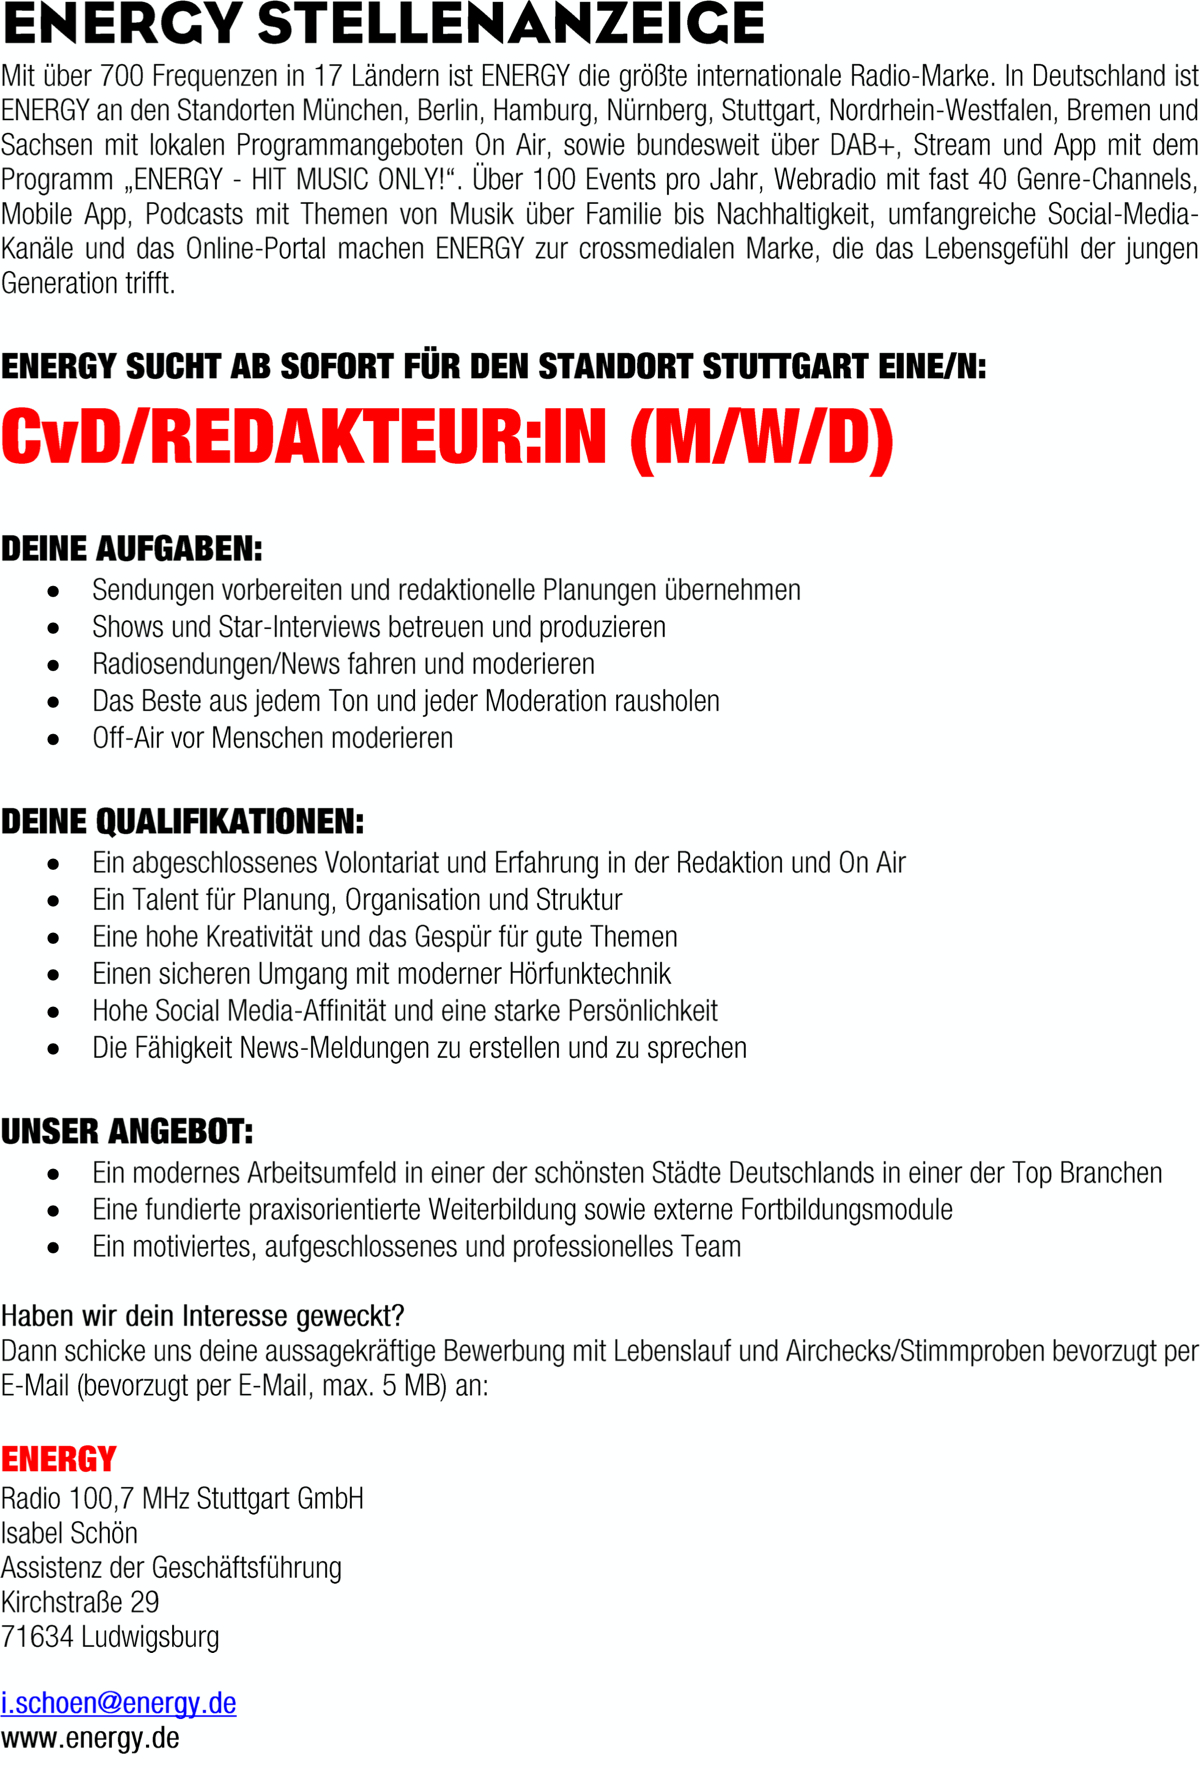 ENERGY Stuttgart sucht CvD/Redakteur*in (m/w/d)